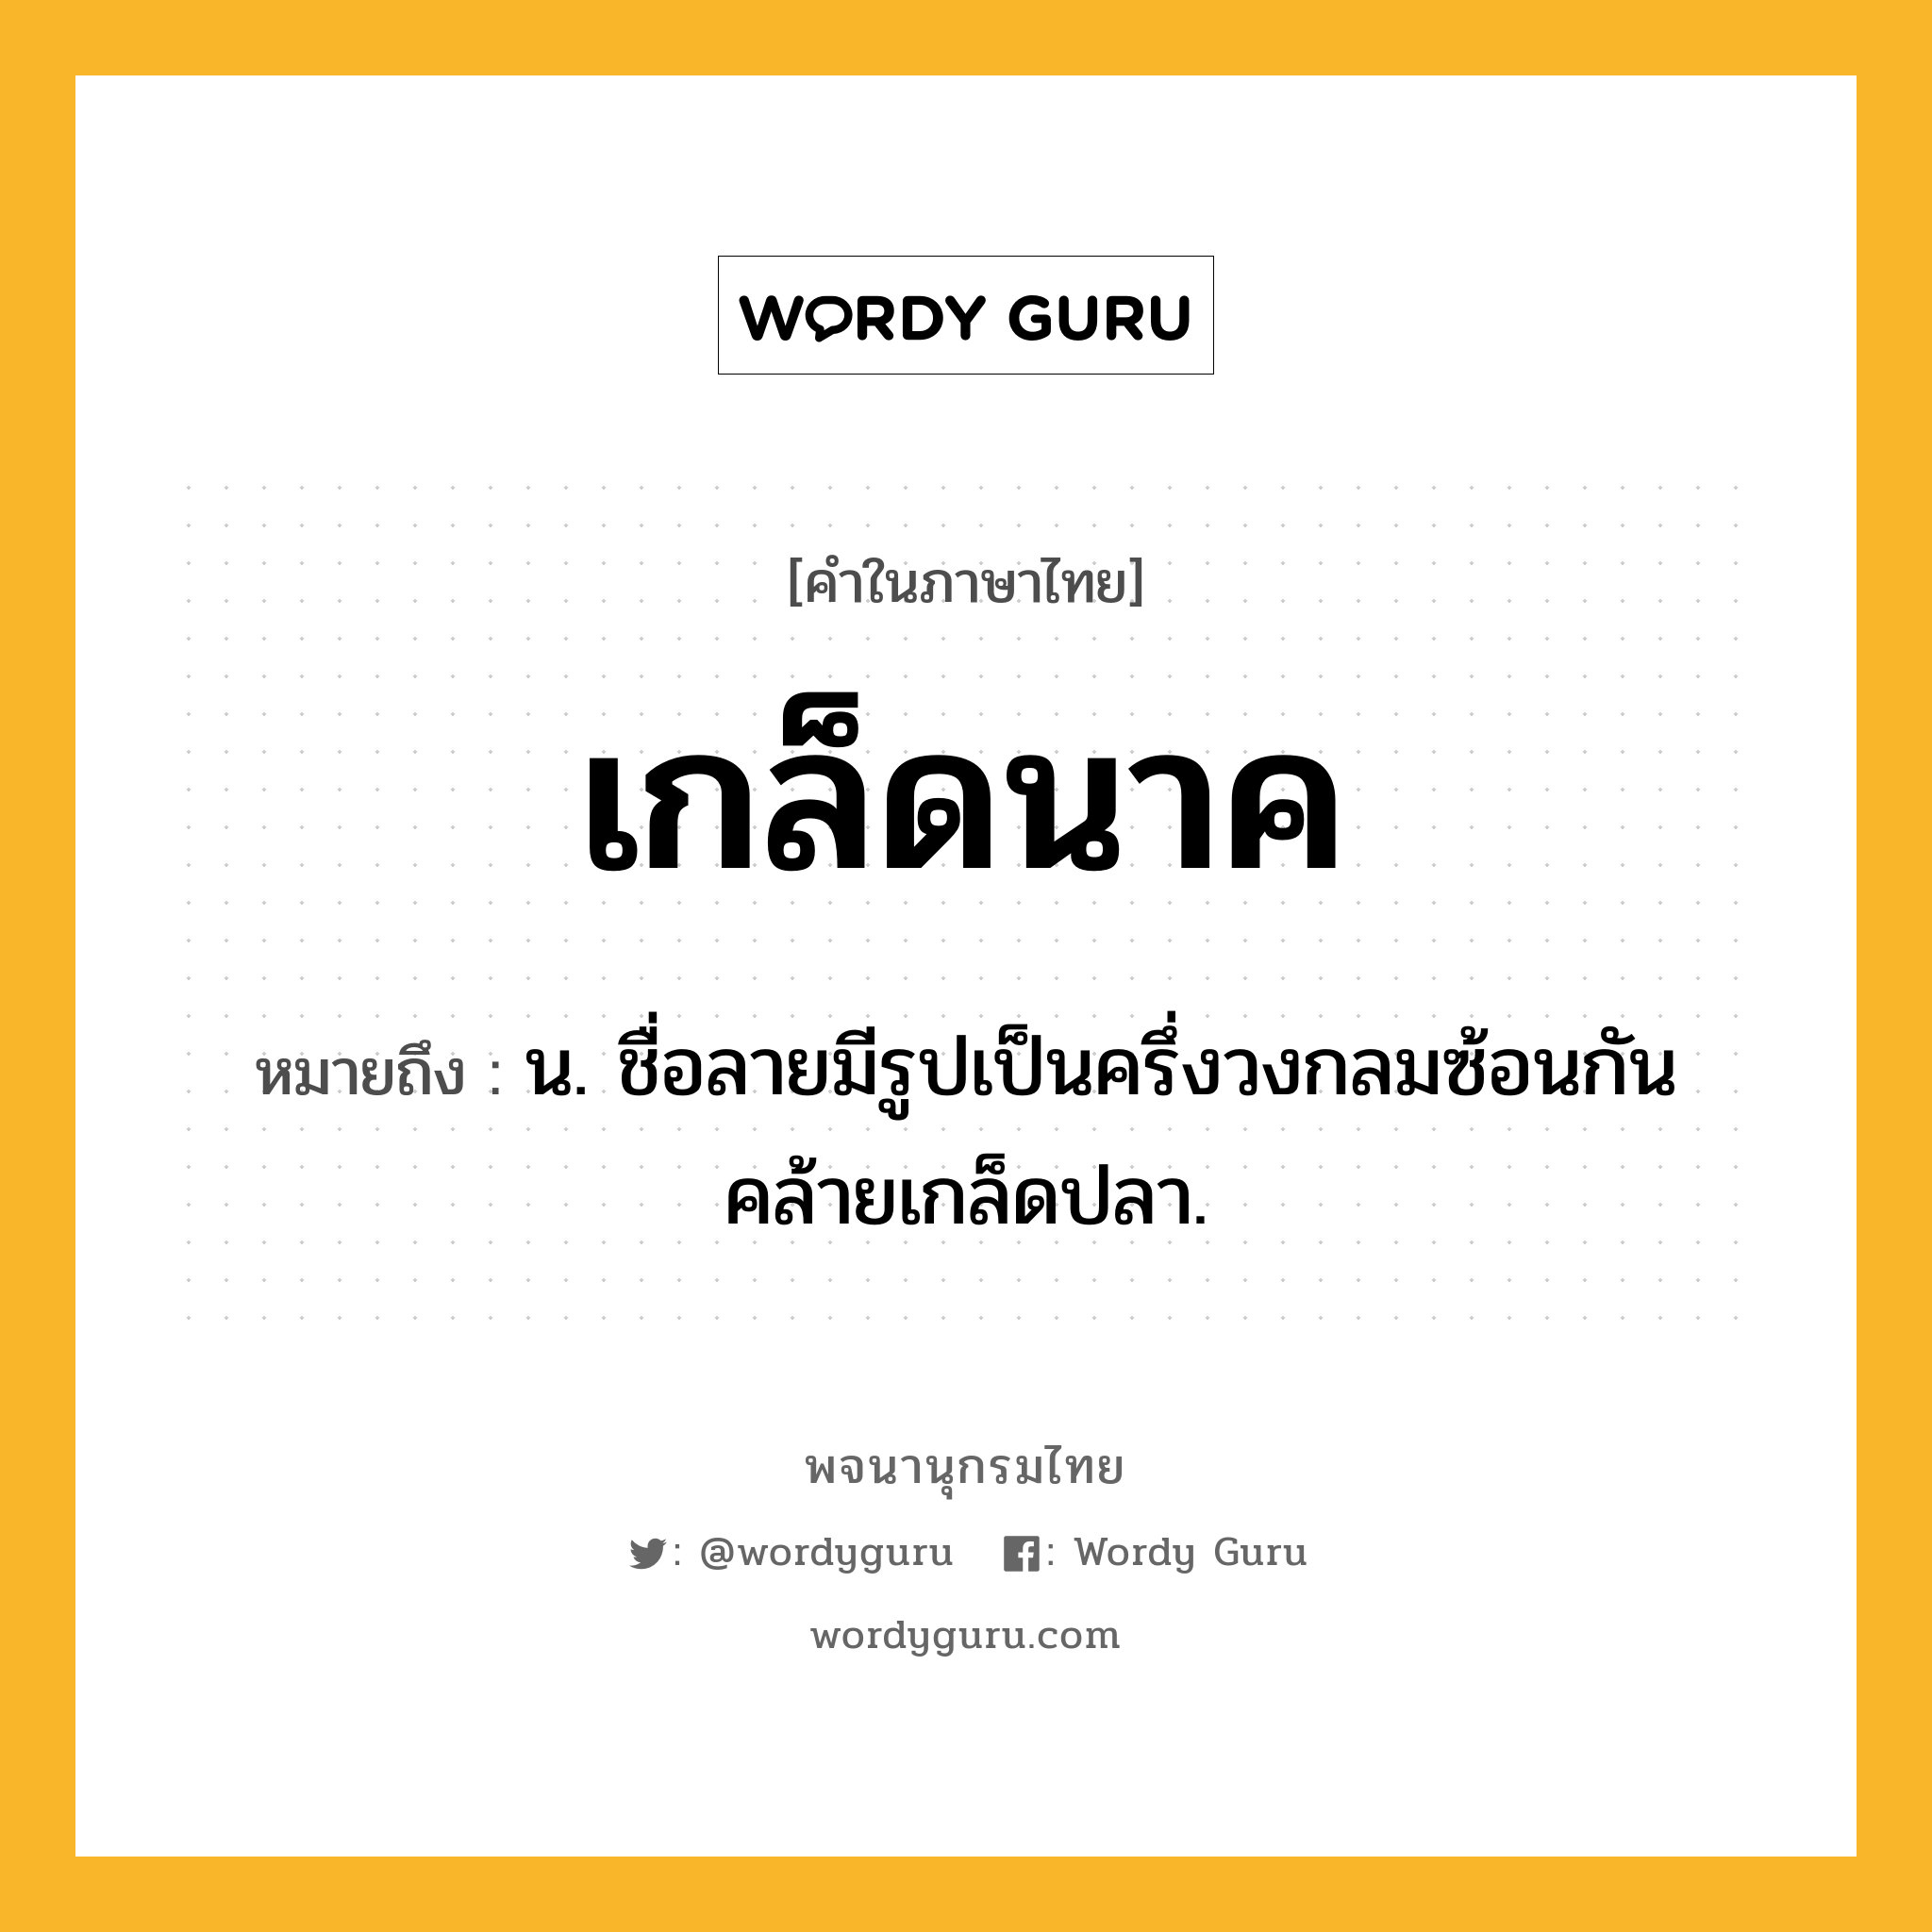 เกล็ดนาค ความหมาย หมายถึงอะไร?, คำในภาษาไทย เกล็ดนาค หมายถึง น. ชื่อลายมีรูปเป็นครึ่งวงกลมซ้อนกันคล้ายเกล็ดปลา.